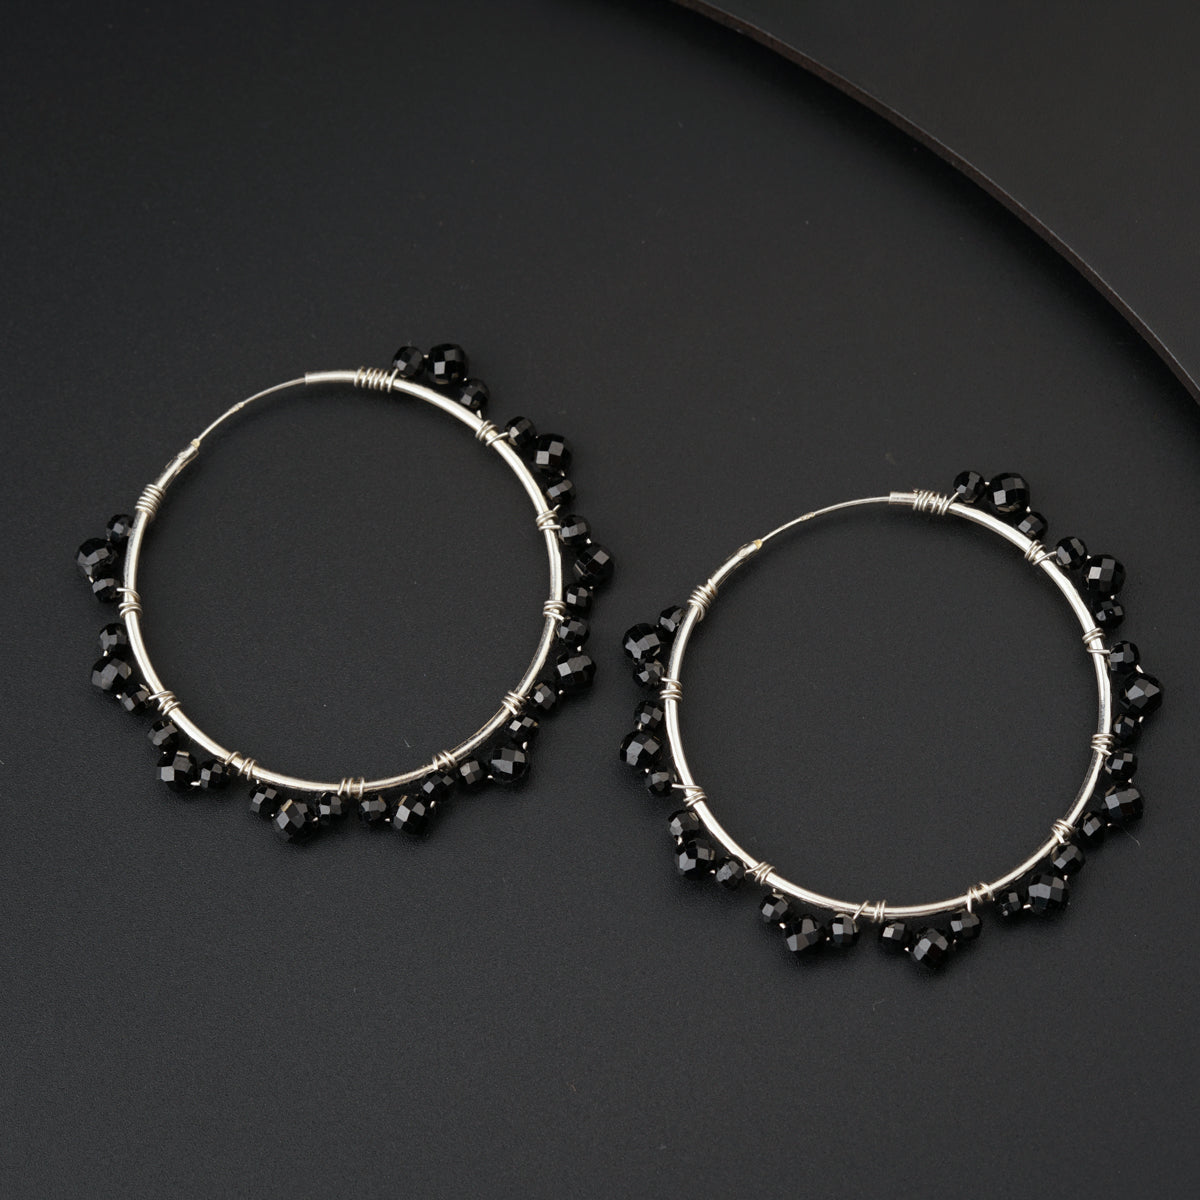 a pair of black beaded hoop earrings on a black surface